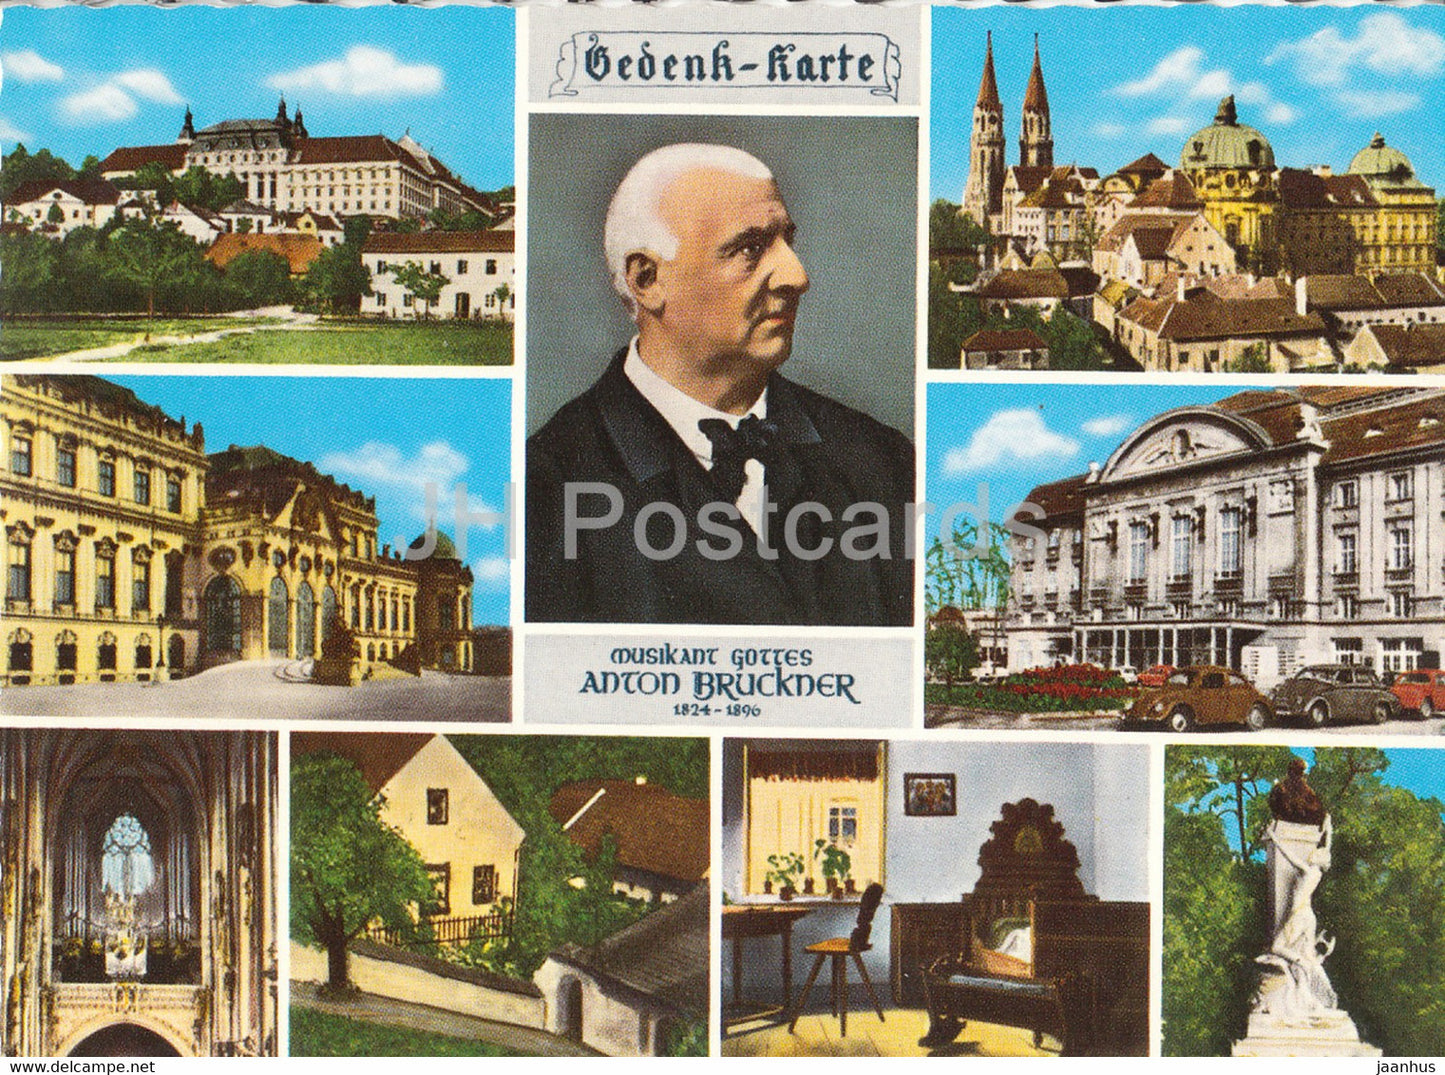 Anton Bruckner - Stift St Florian - Klosterneuburg - Schloss Belvedere - Wien - composer - multiview - Austria - unused - JH Postcards